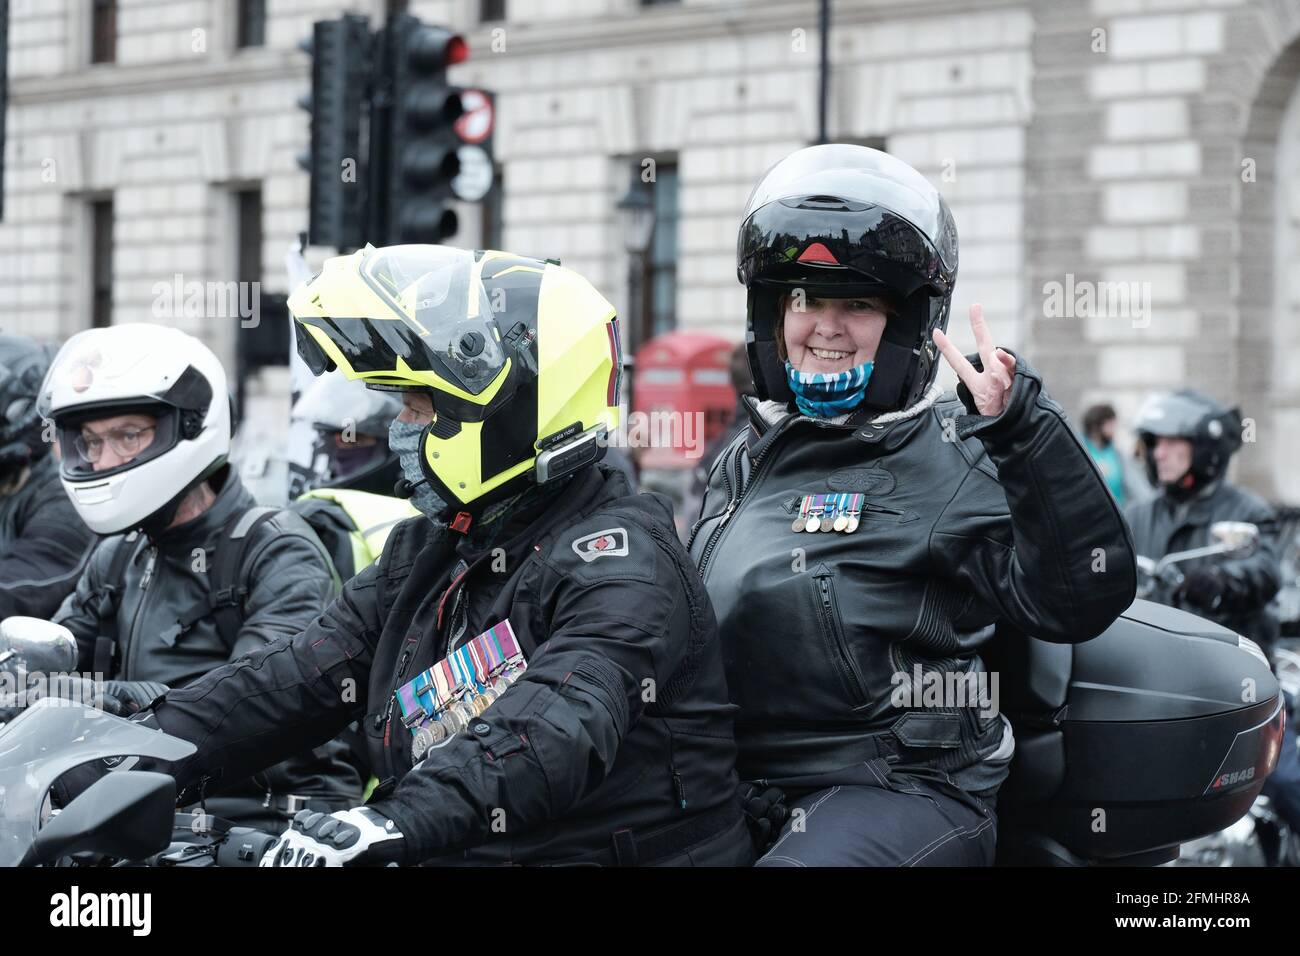 Des centaines de motocyclistes du groupe de campagne Rolling avec Thunder UK Entrez sur la place du Parlement pour soutenir les anciens combattants britanniques L'essai NI s'est effondré Banque D'Images